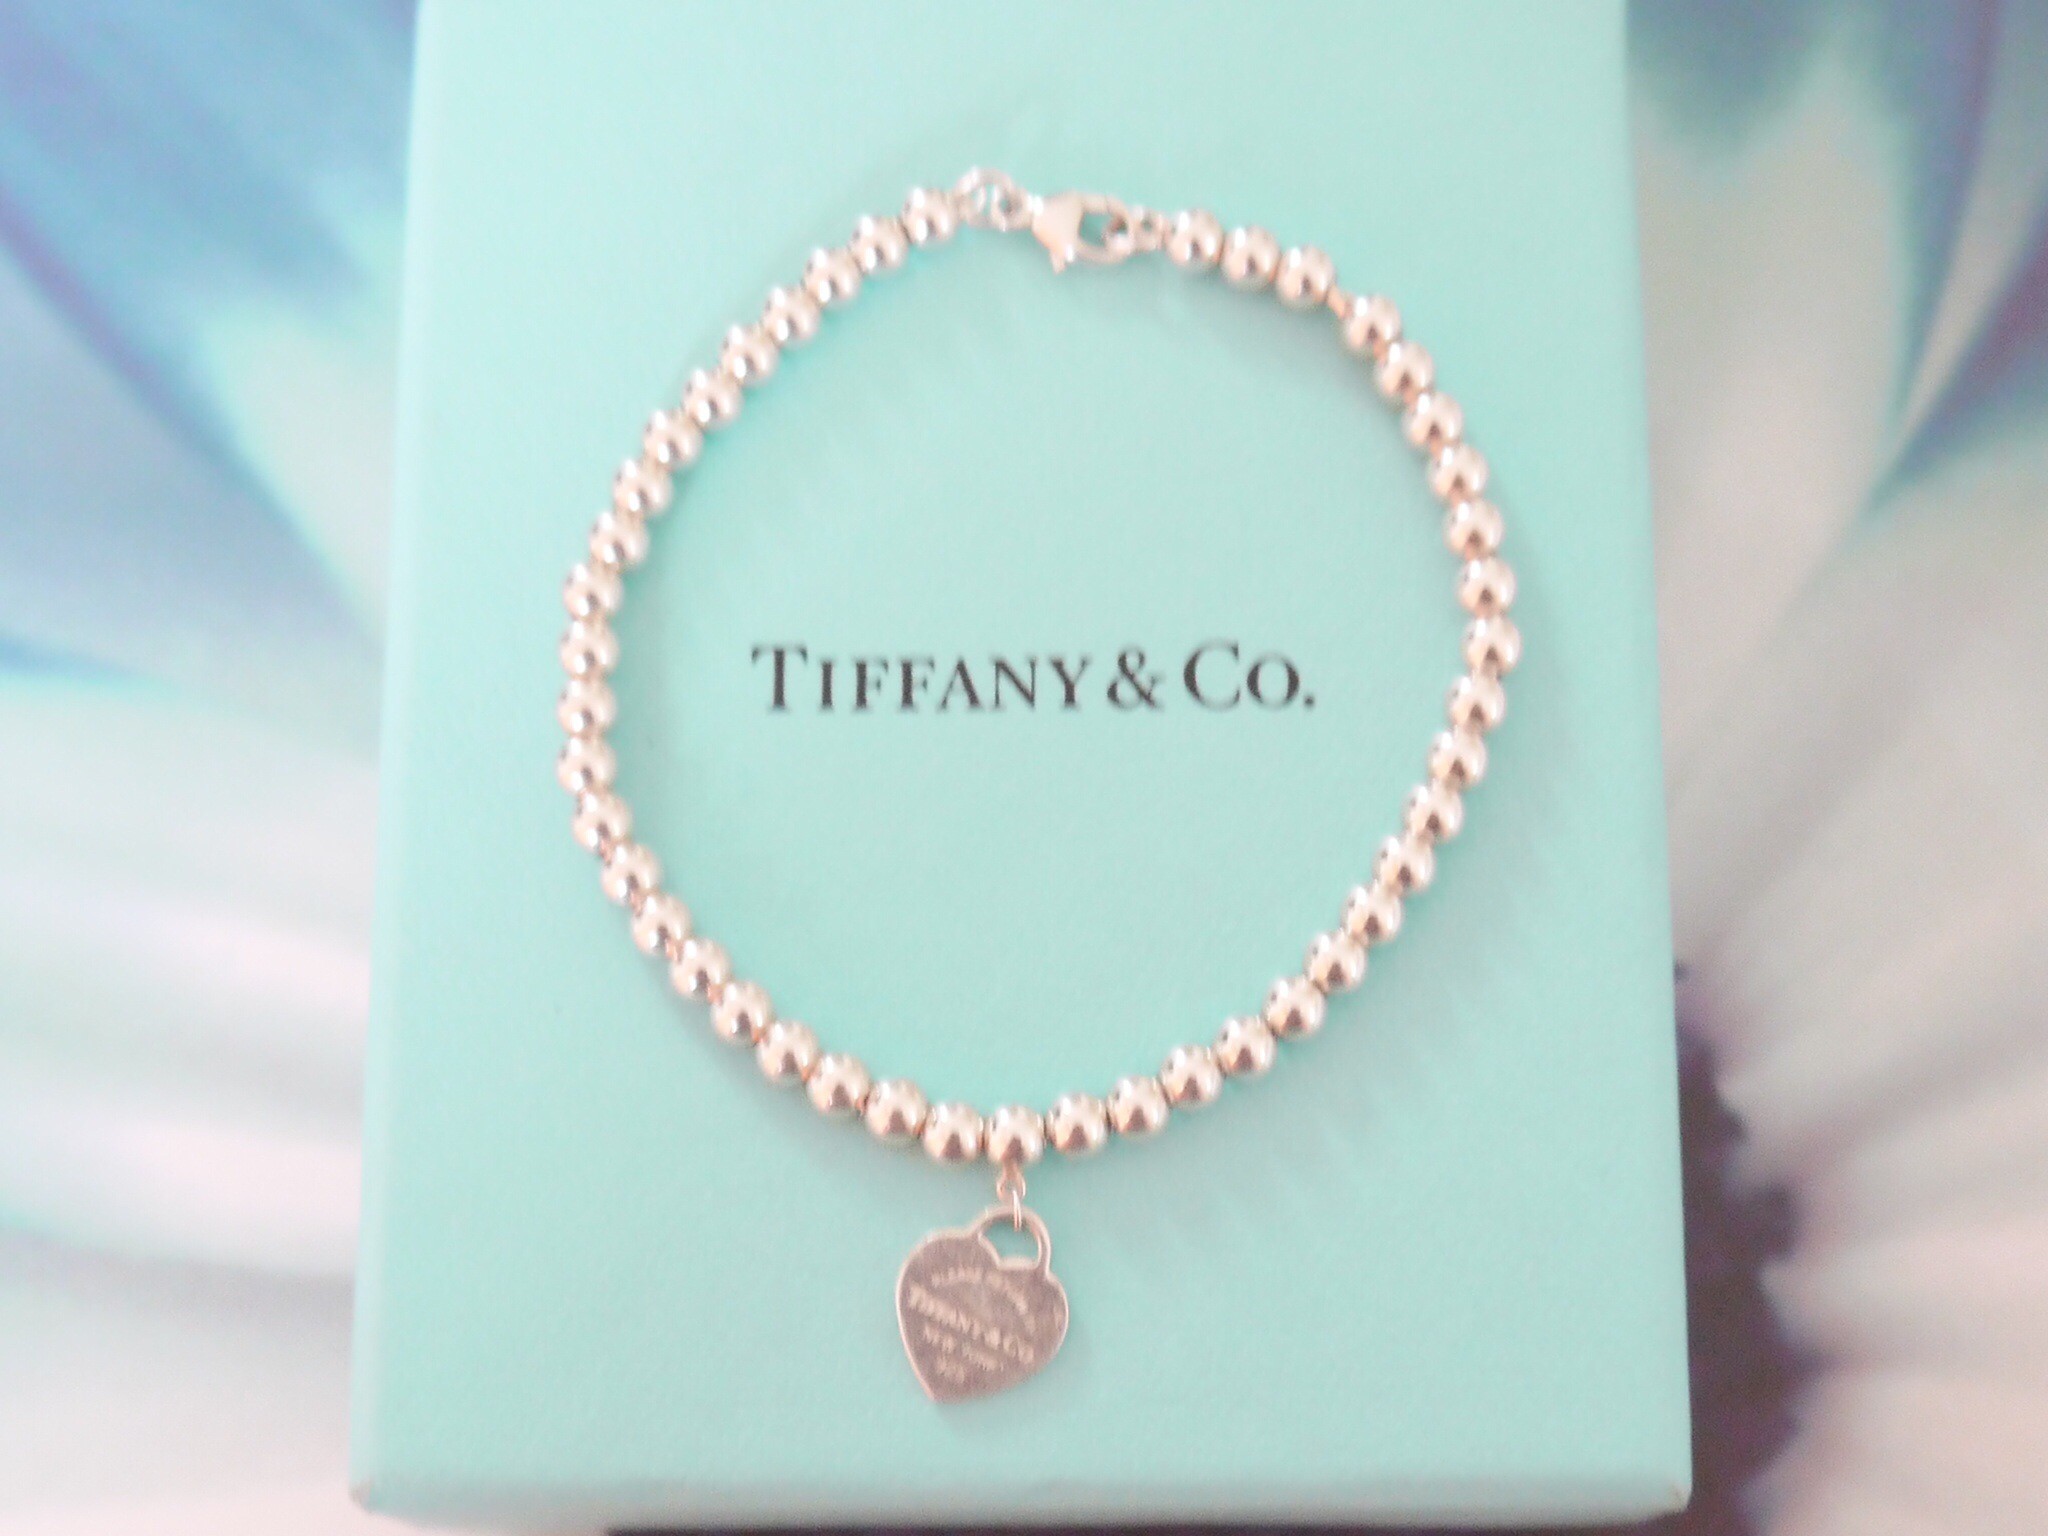 2048x1536 Tiffany And Co Wallpaper Tiffany bead bracelet 